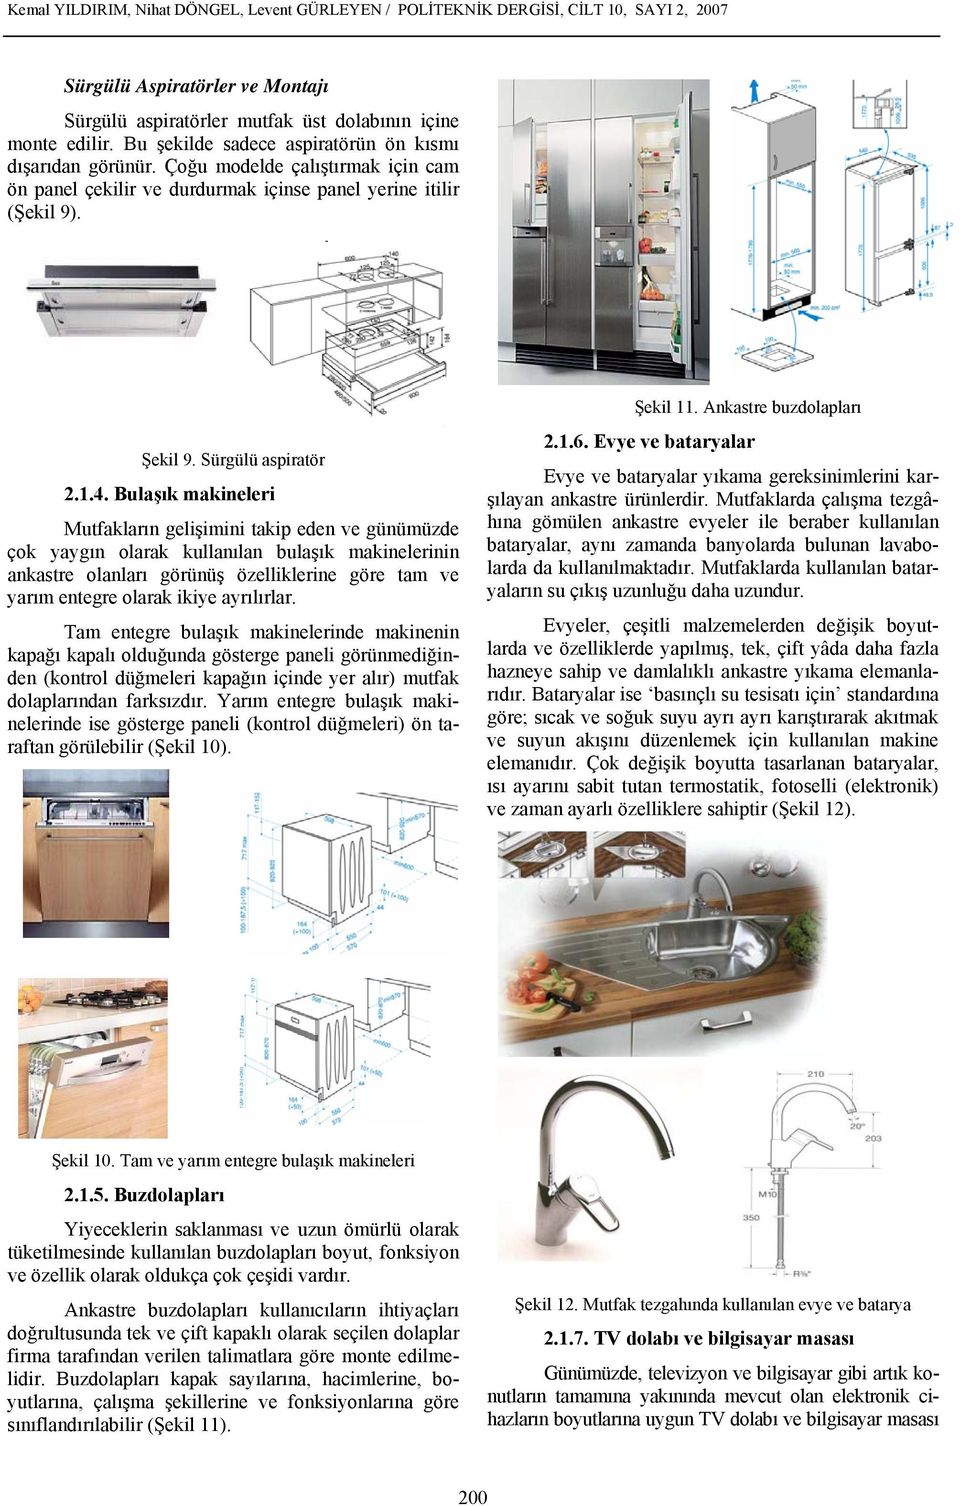 Bulaşık makineleri Mutfakların gelişimini takip eden ve günümüzde çok yaygın olarak kullanılan bulaşık makinelerinin ankastre olanları görünüş özelliklerine göre tam ve yarım entegre olarak ikiye